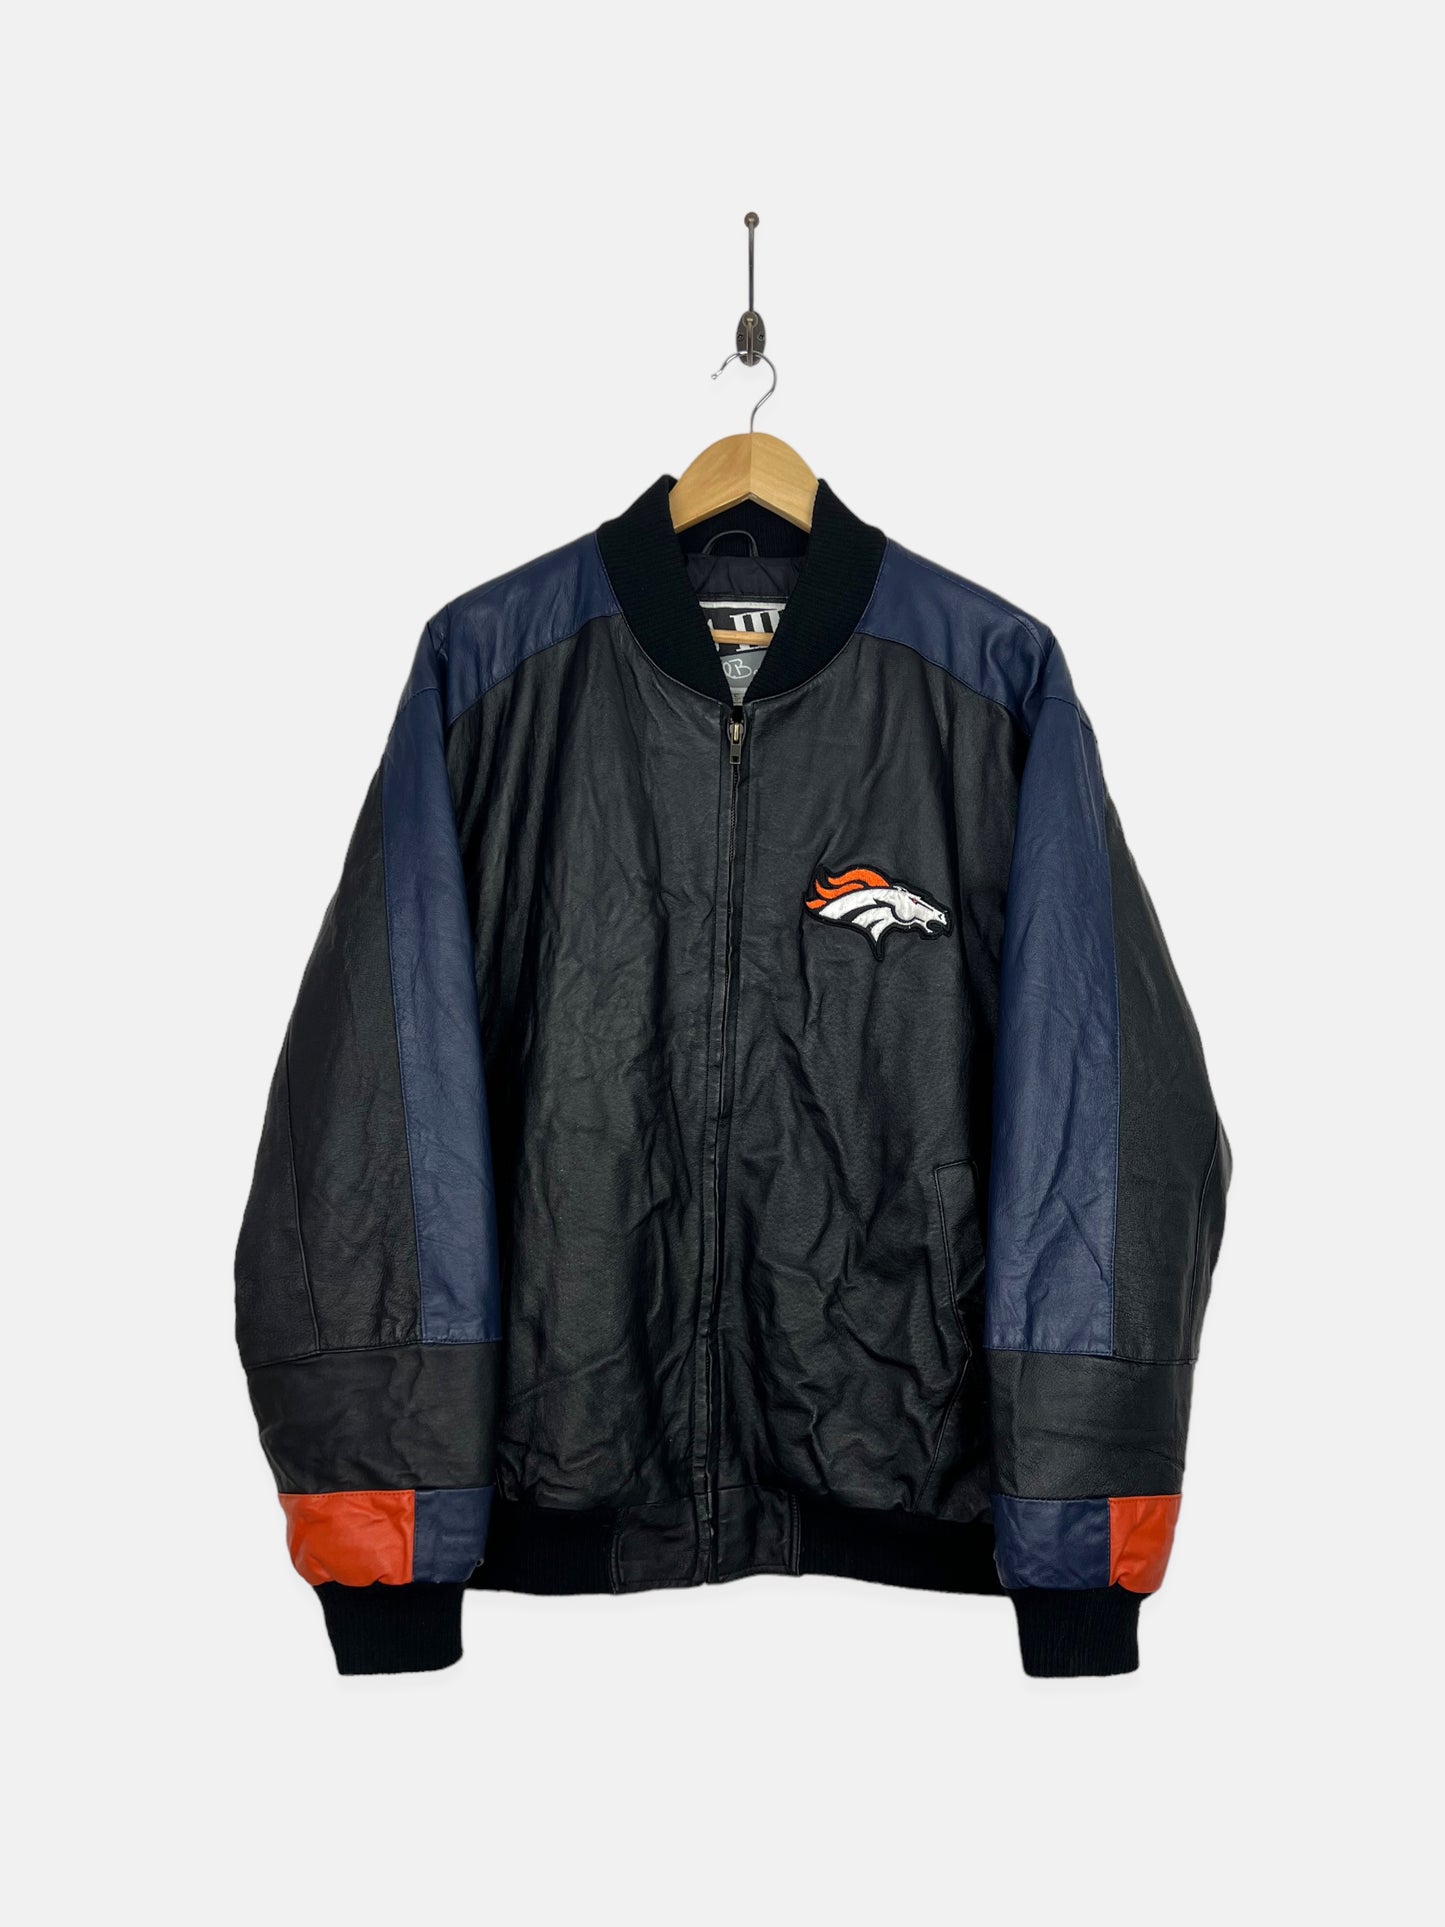 90's Denver Broncos NFL Embroidered Vintage Leather Jacket Size L-XL